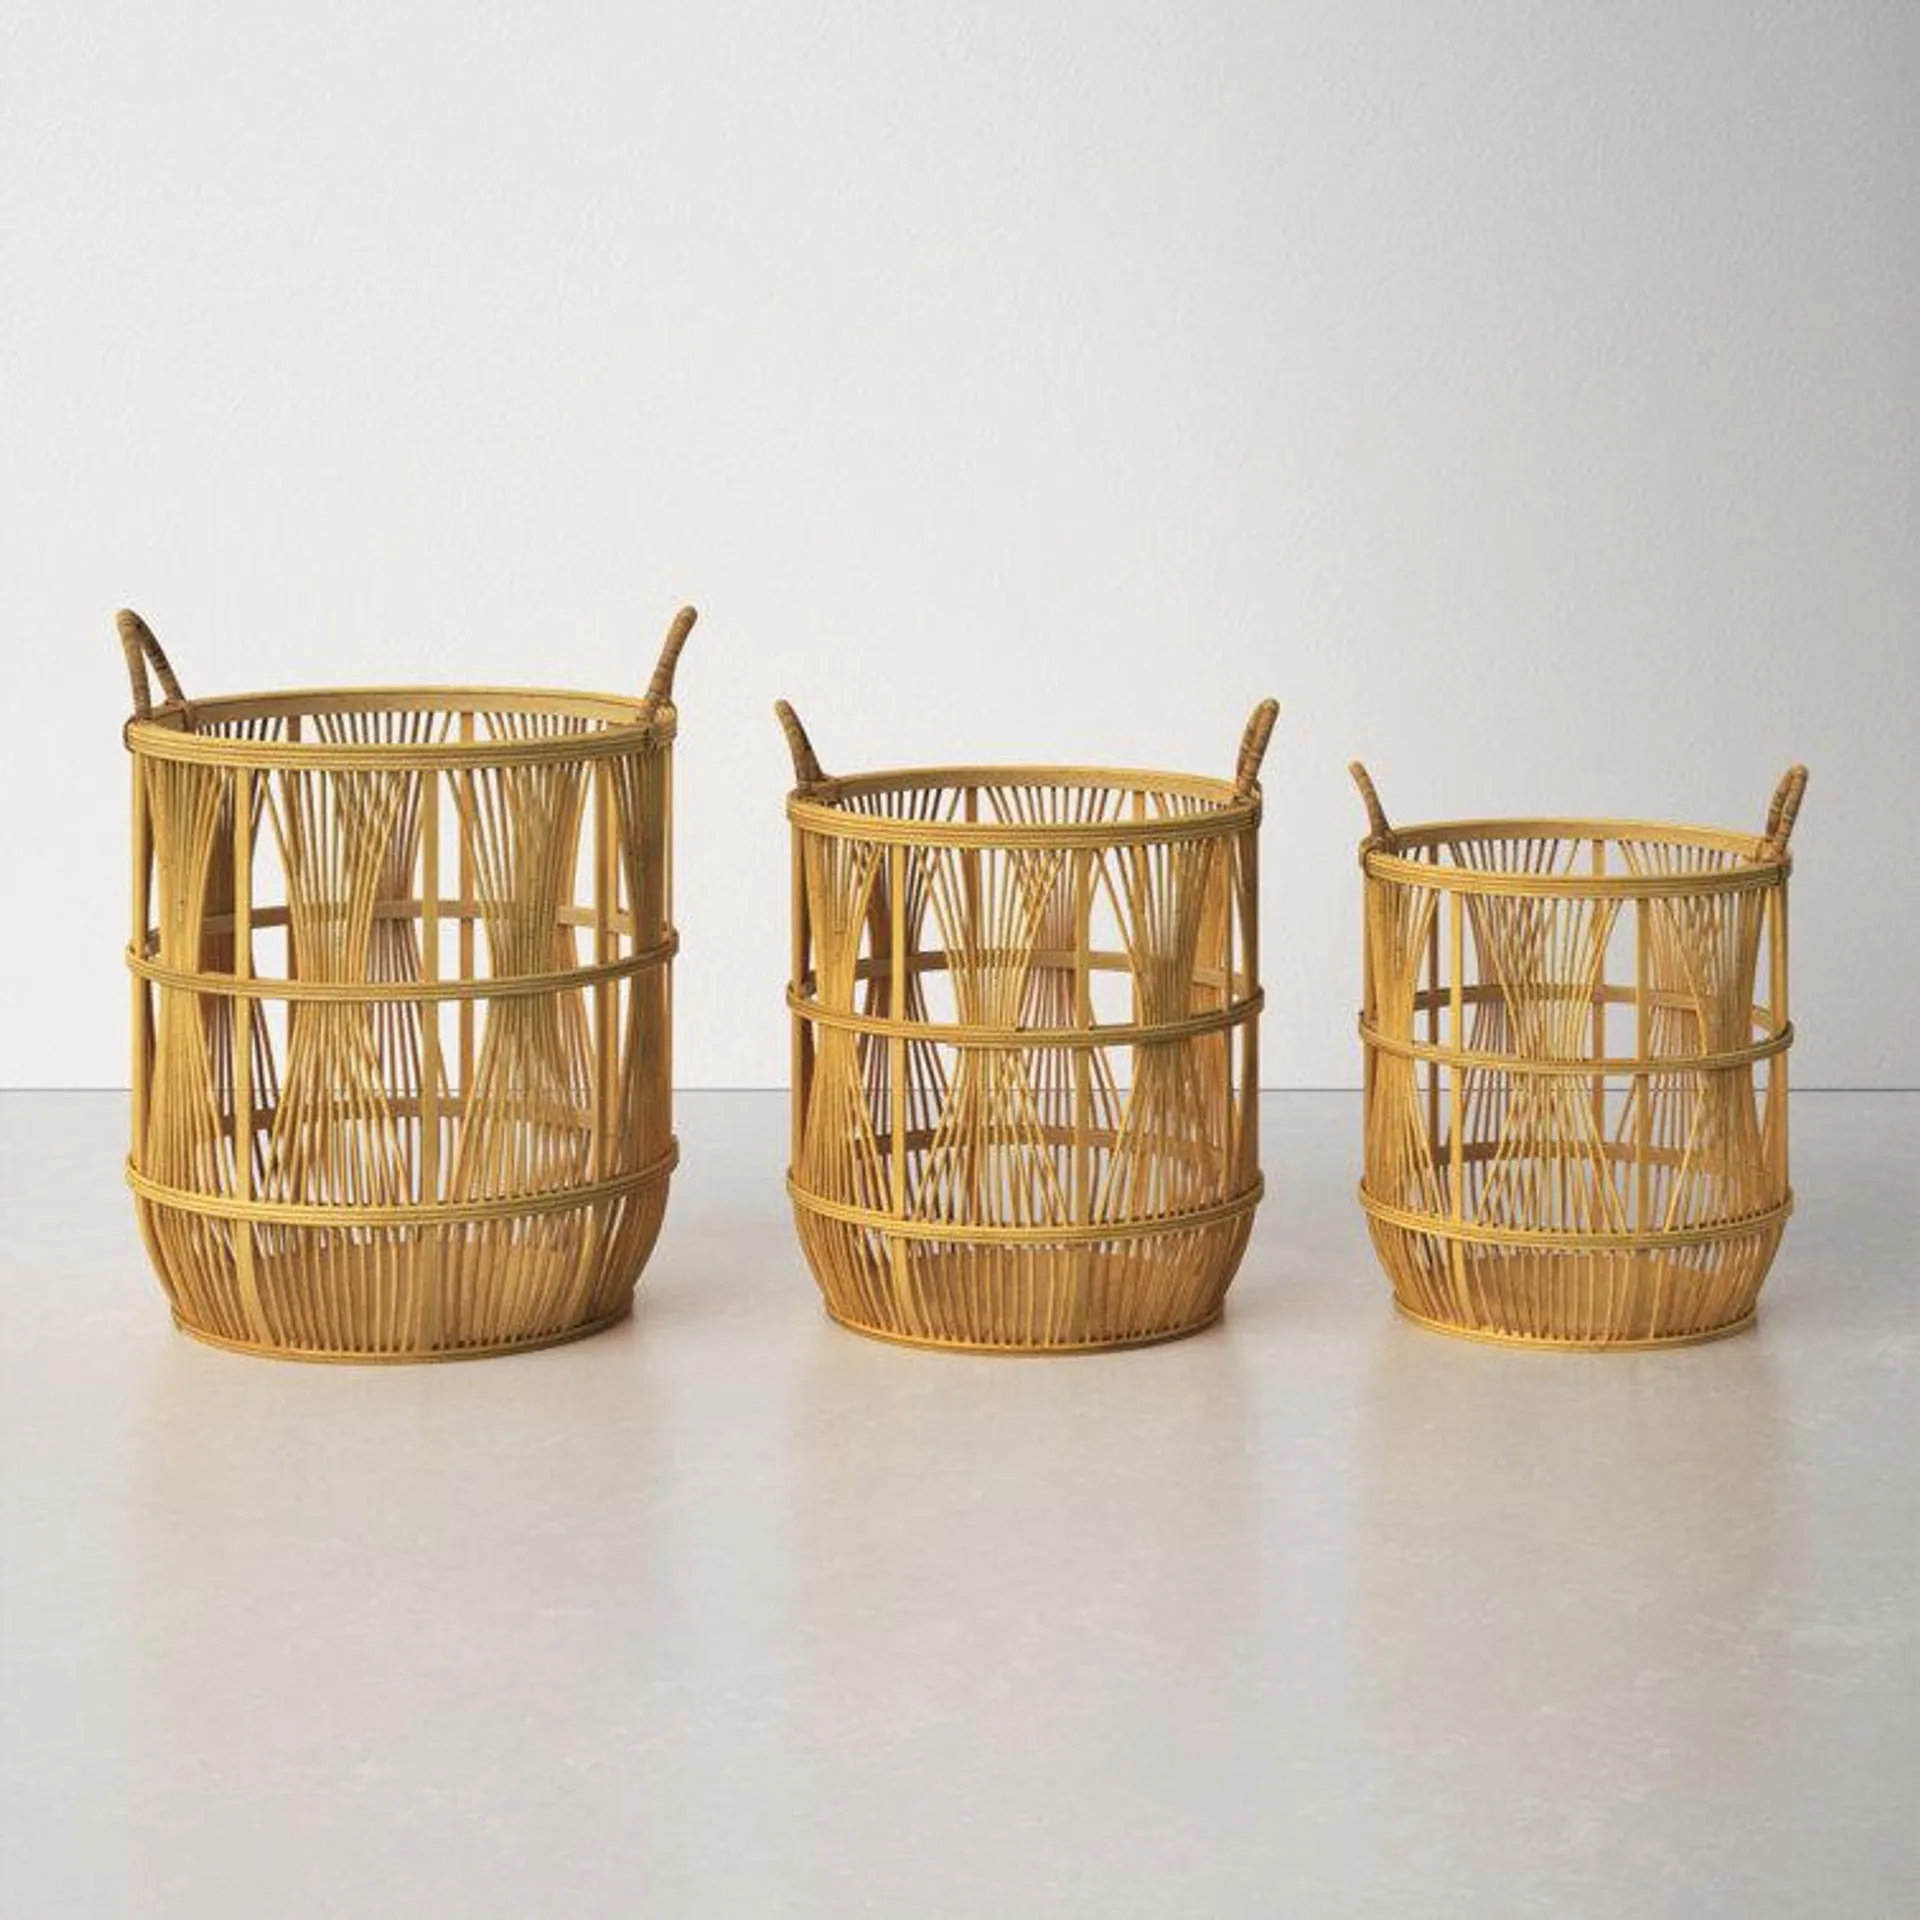 Nesting Bamboo Basket - Set of 3